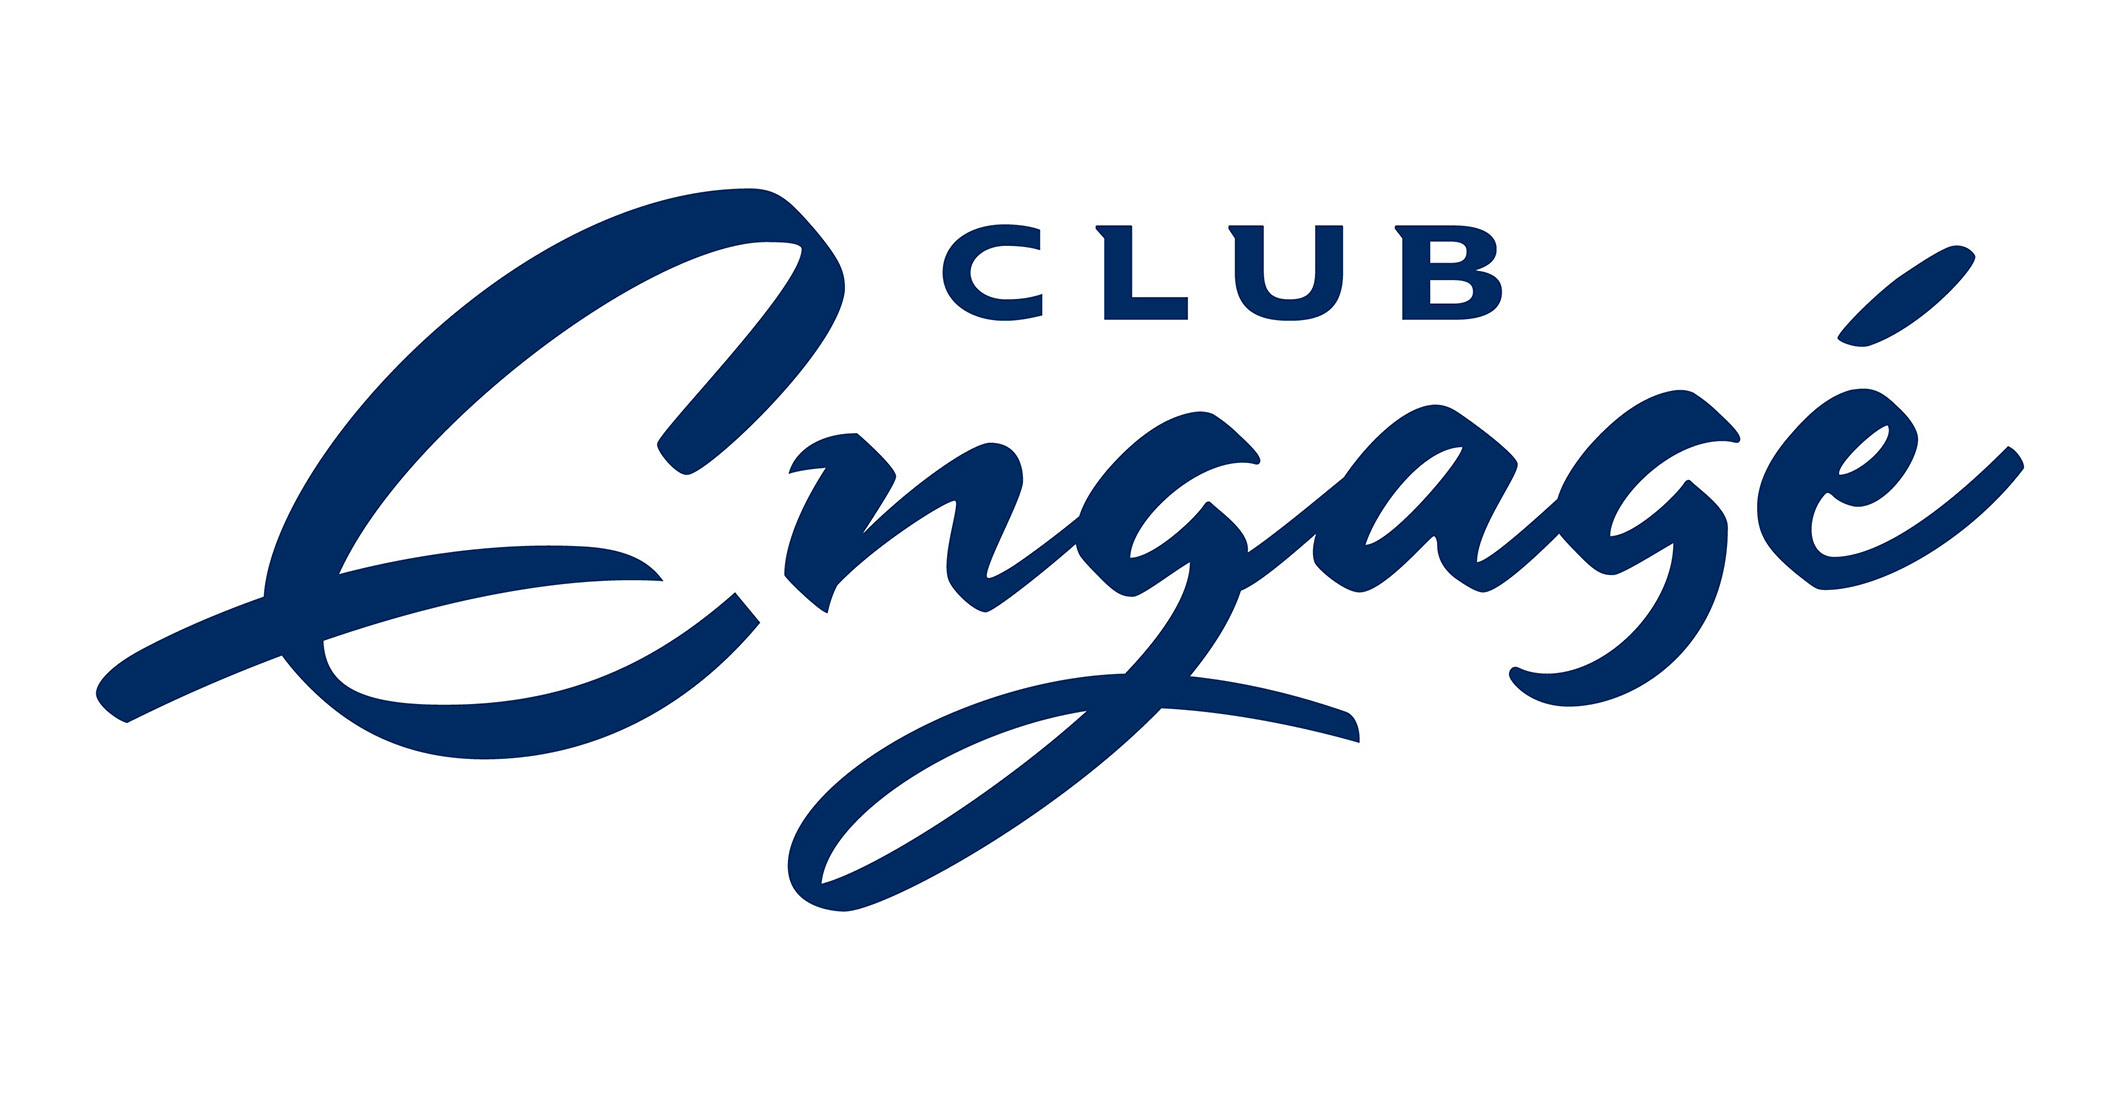 Label Club Engagé 2